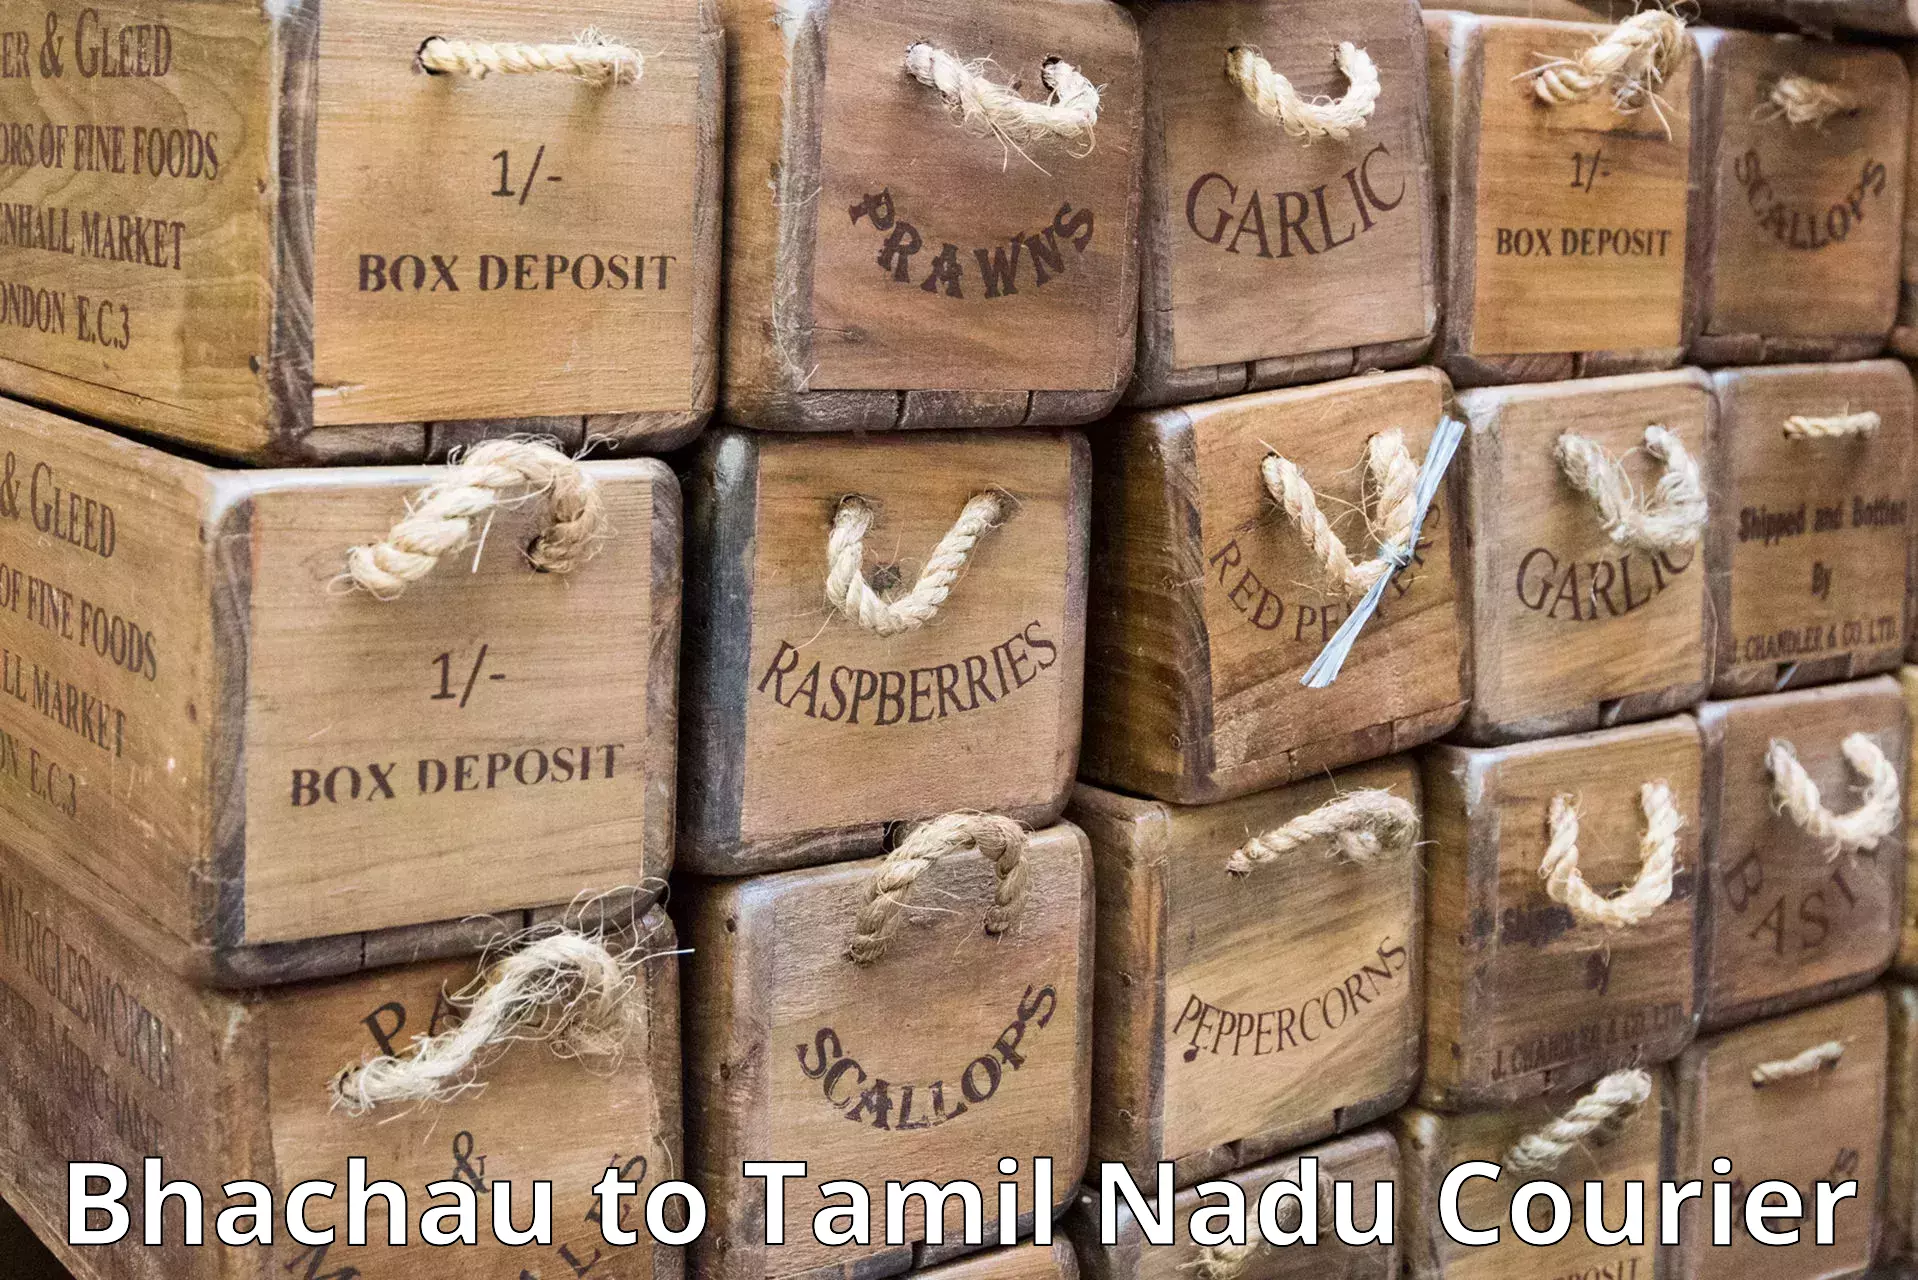 Efficient cargo handling Bhachau to Tamil Nadu